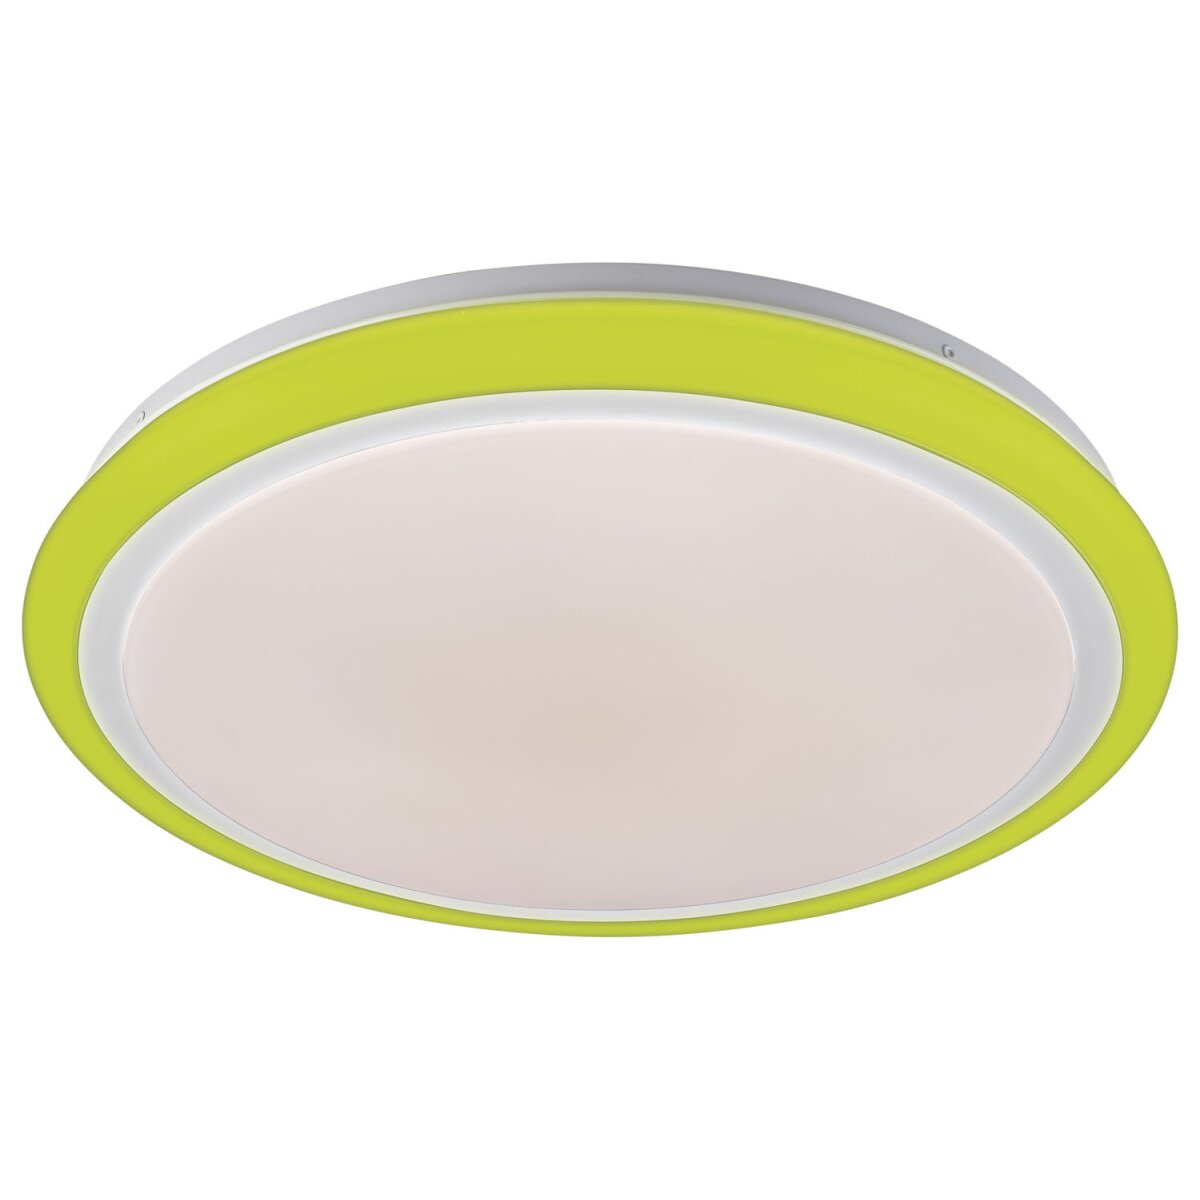 LIVARNO home LED-Deckenleuchte mit Farb-Dekolicht, Ø 41 cm - B-Ware, 21,99 €